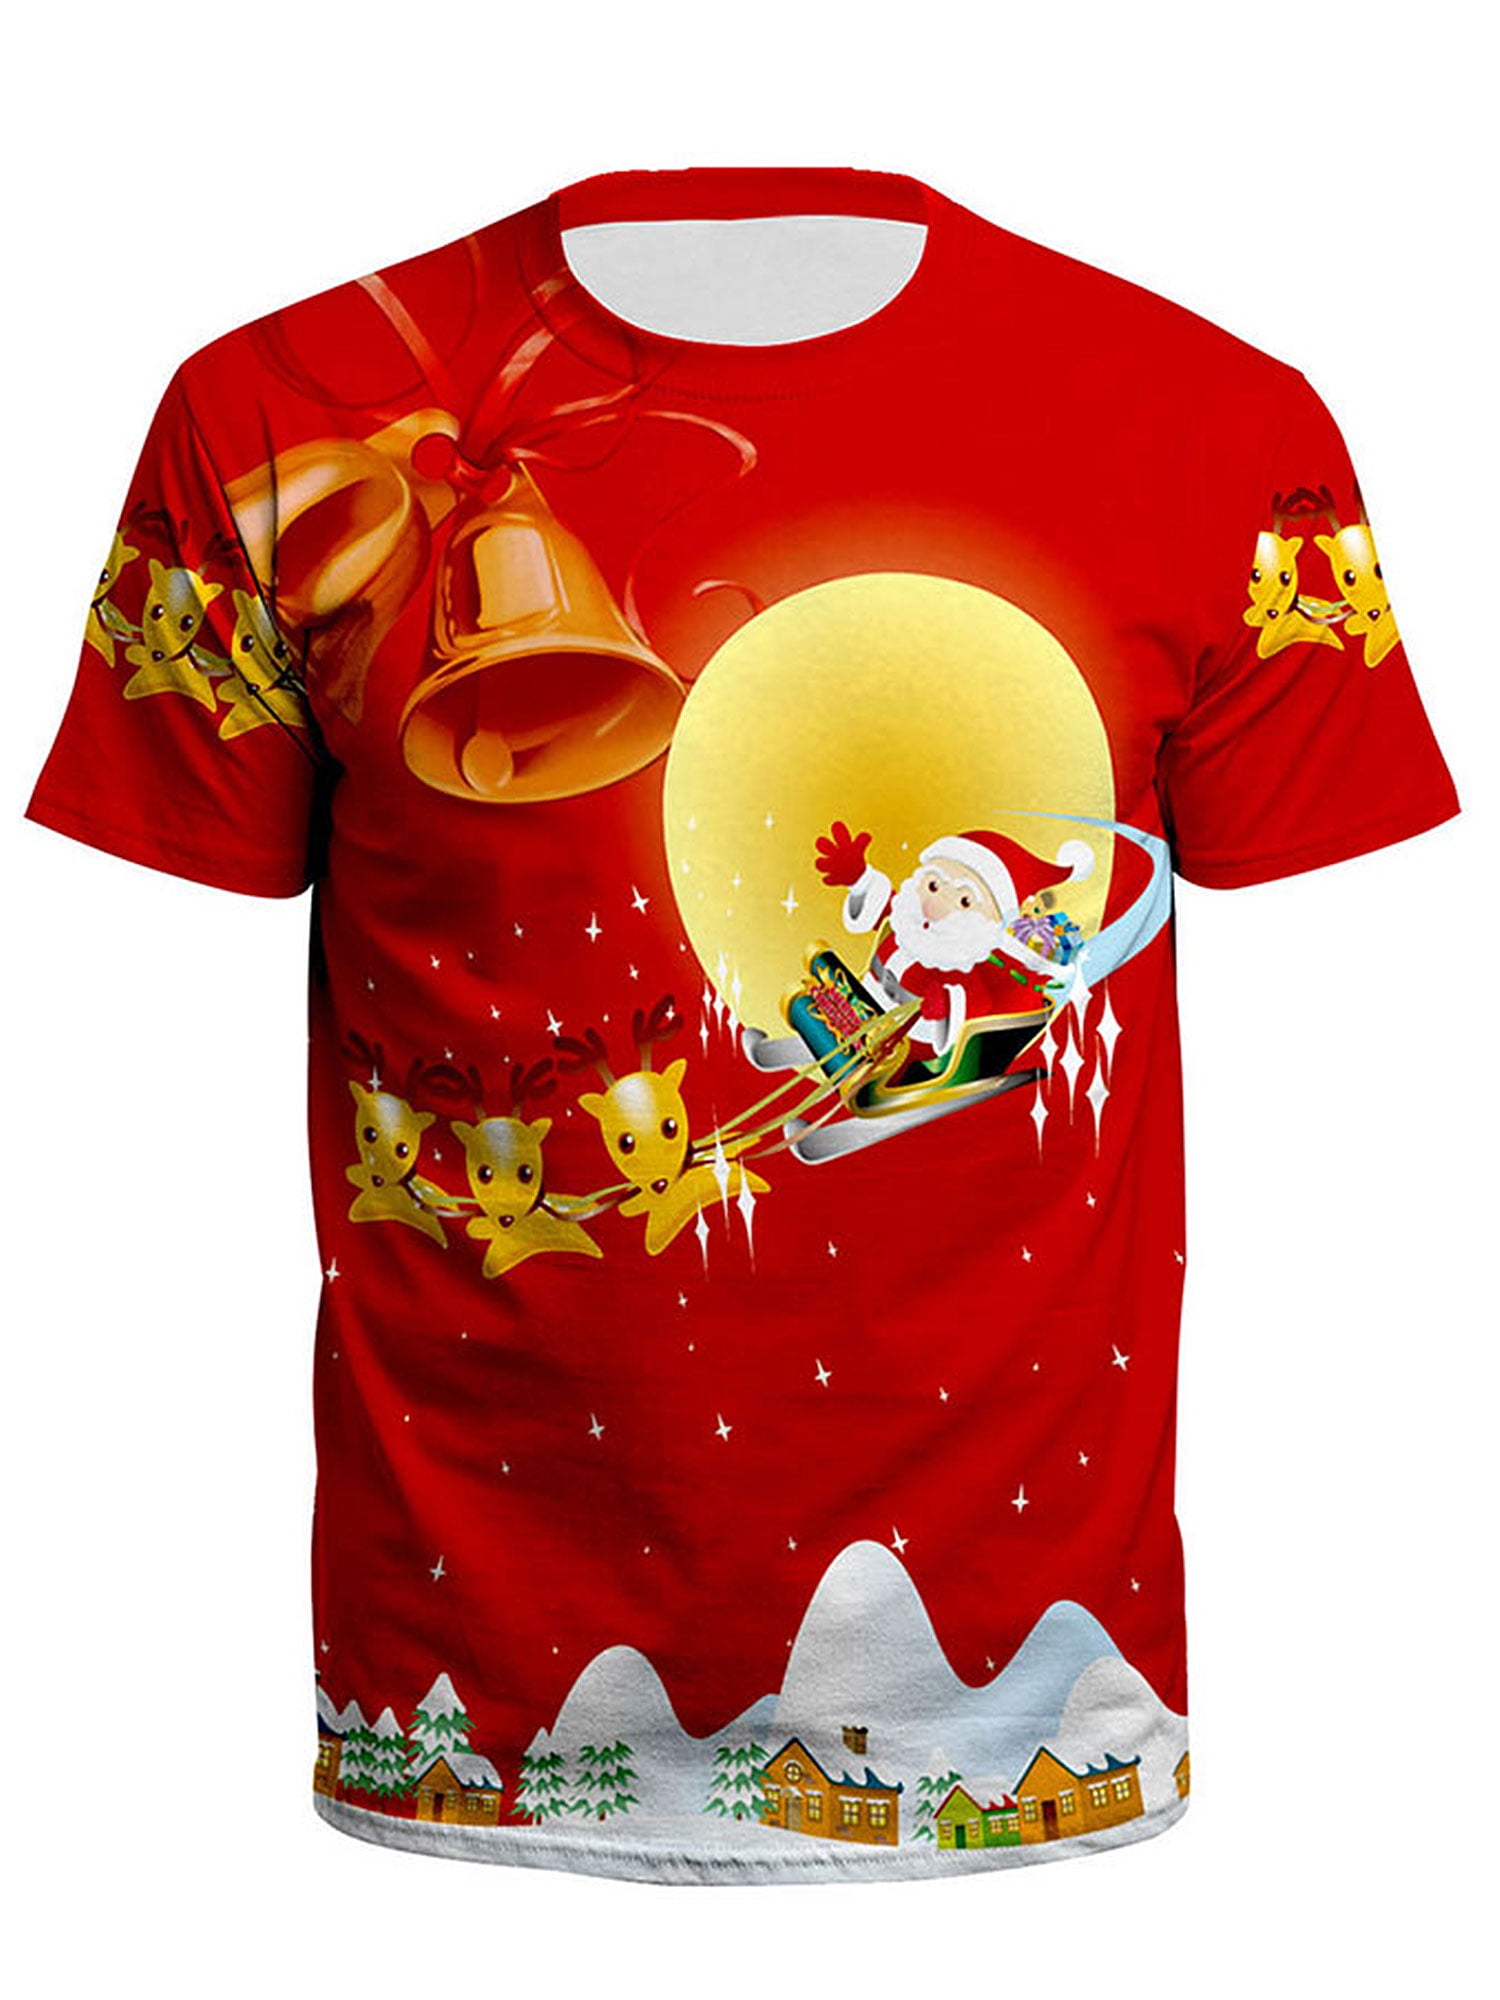 Xmas Eve Christmas Shirt for Women Mens Christmas Shirt Santa Claus H20 H2o H2o Shirt Funny Christmas Shirt T-Shirt